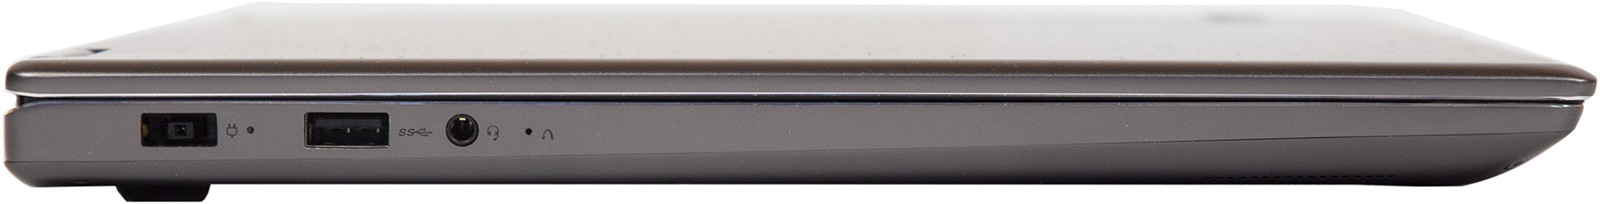 Универсальный Йог. Обзор ноутбука-трансформера Lenovo Yoga 720 - 5